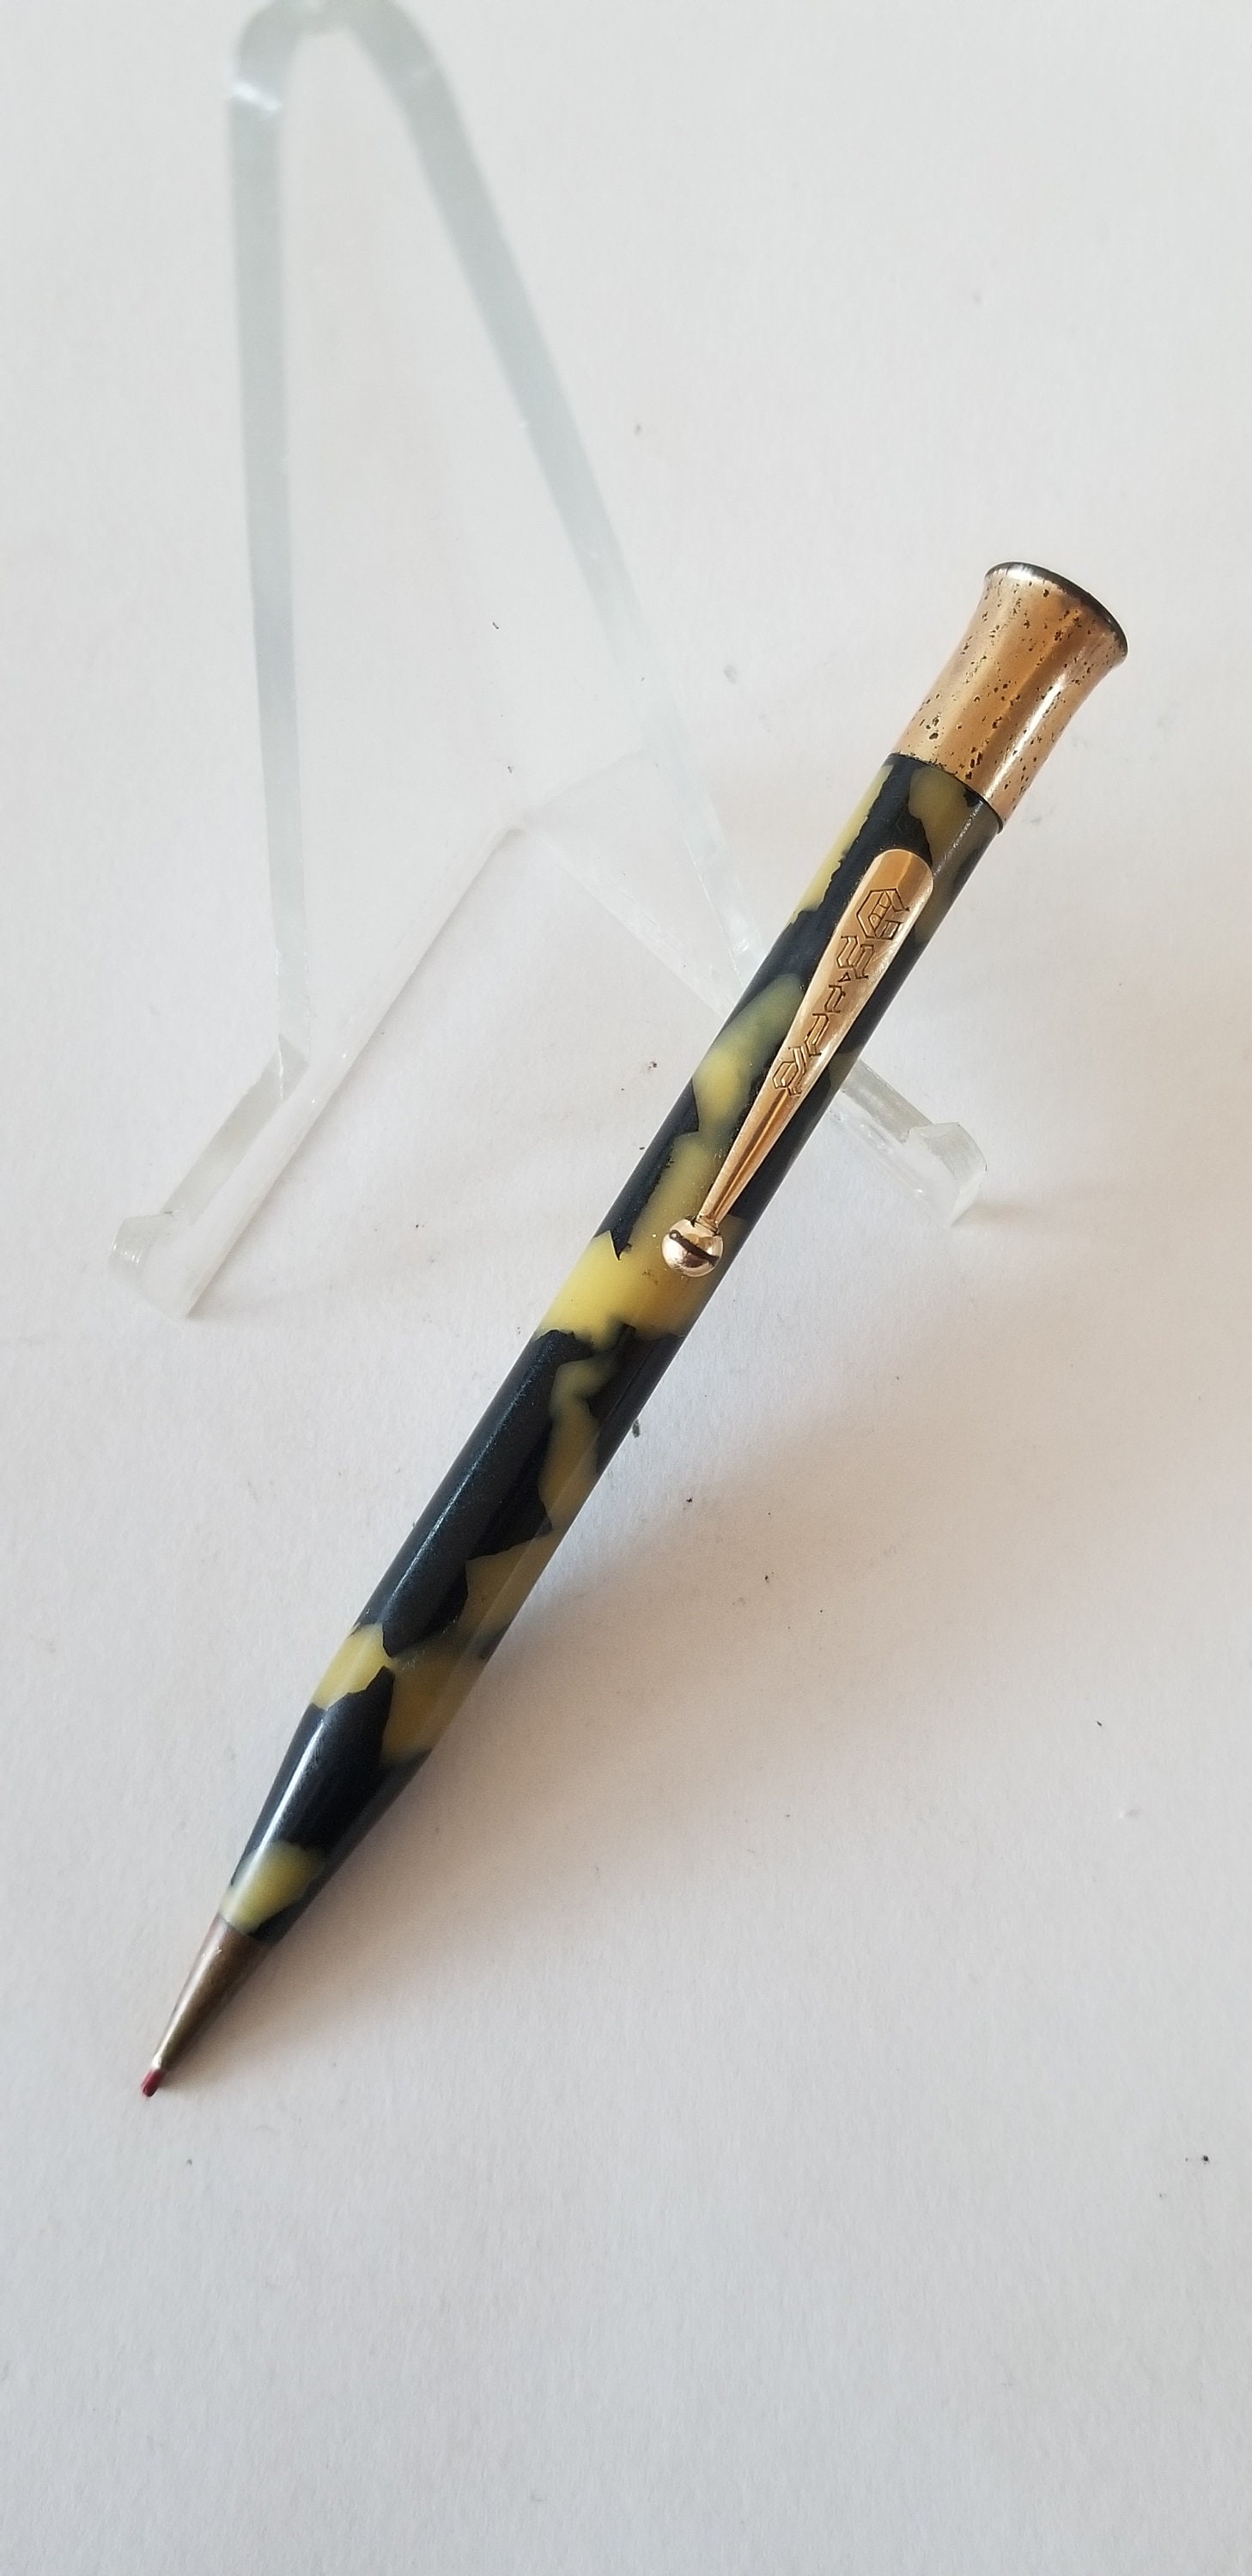 Wholesale Nano Pen  Compact KeyChain Pen for your store - Faire